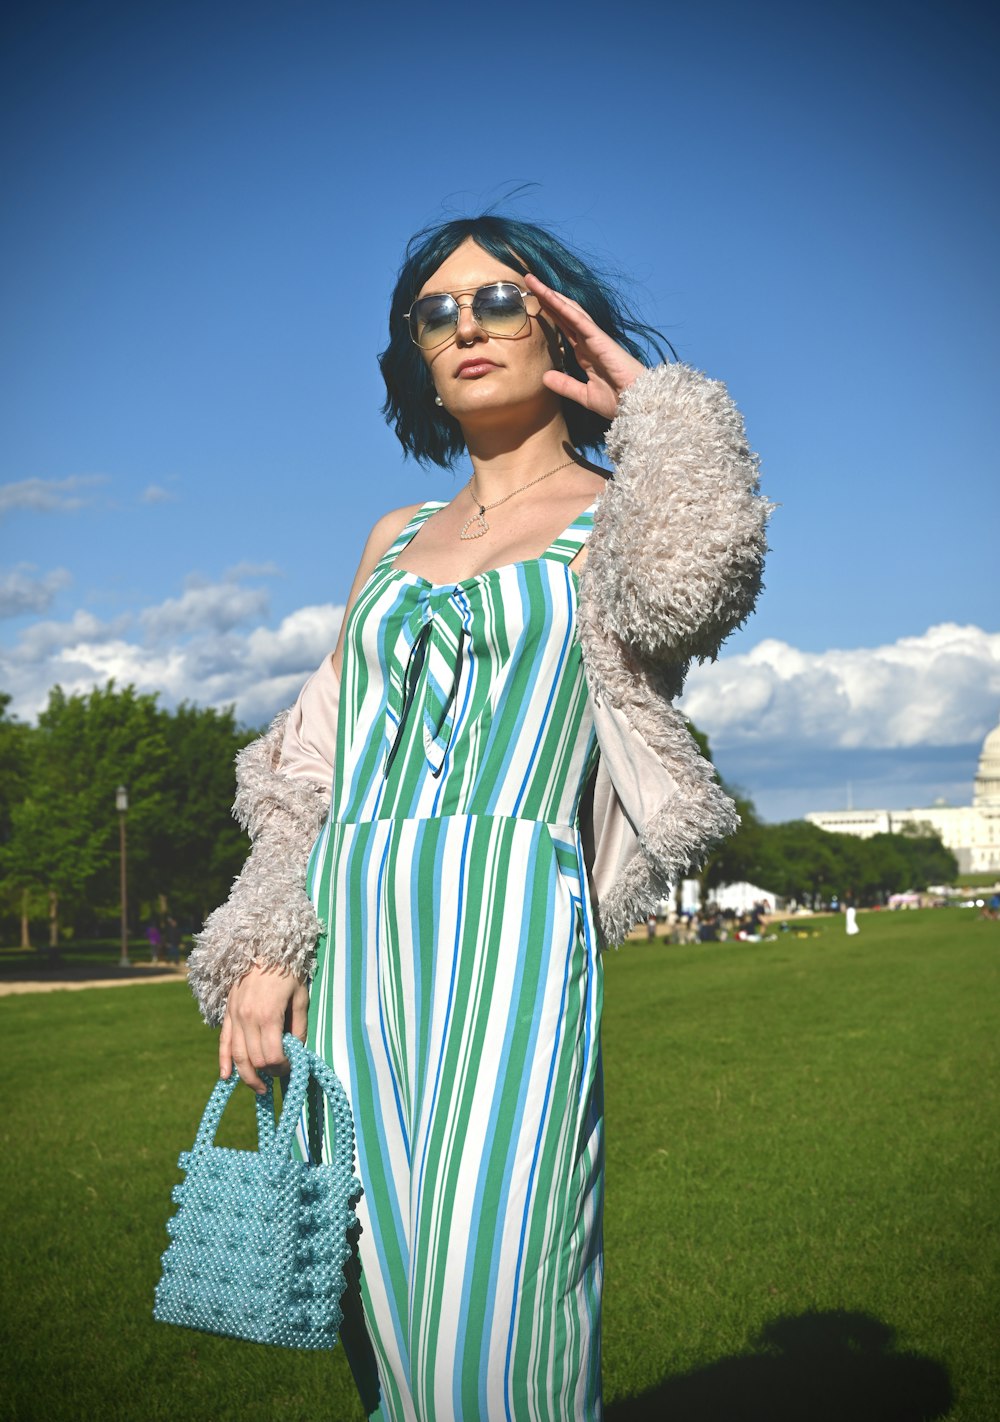 Frau in weiß-grünem Kleid mit schwarzer Sonnenbrille, die tagsüber auf grünem Rasen steht